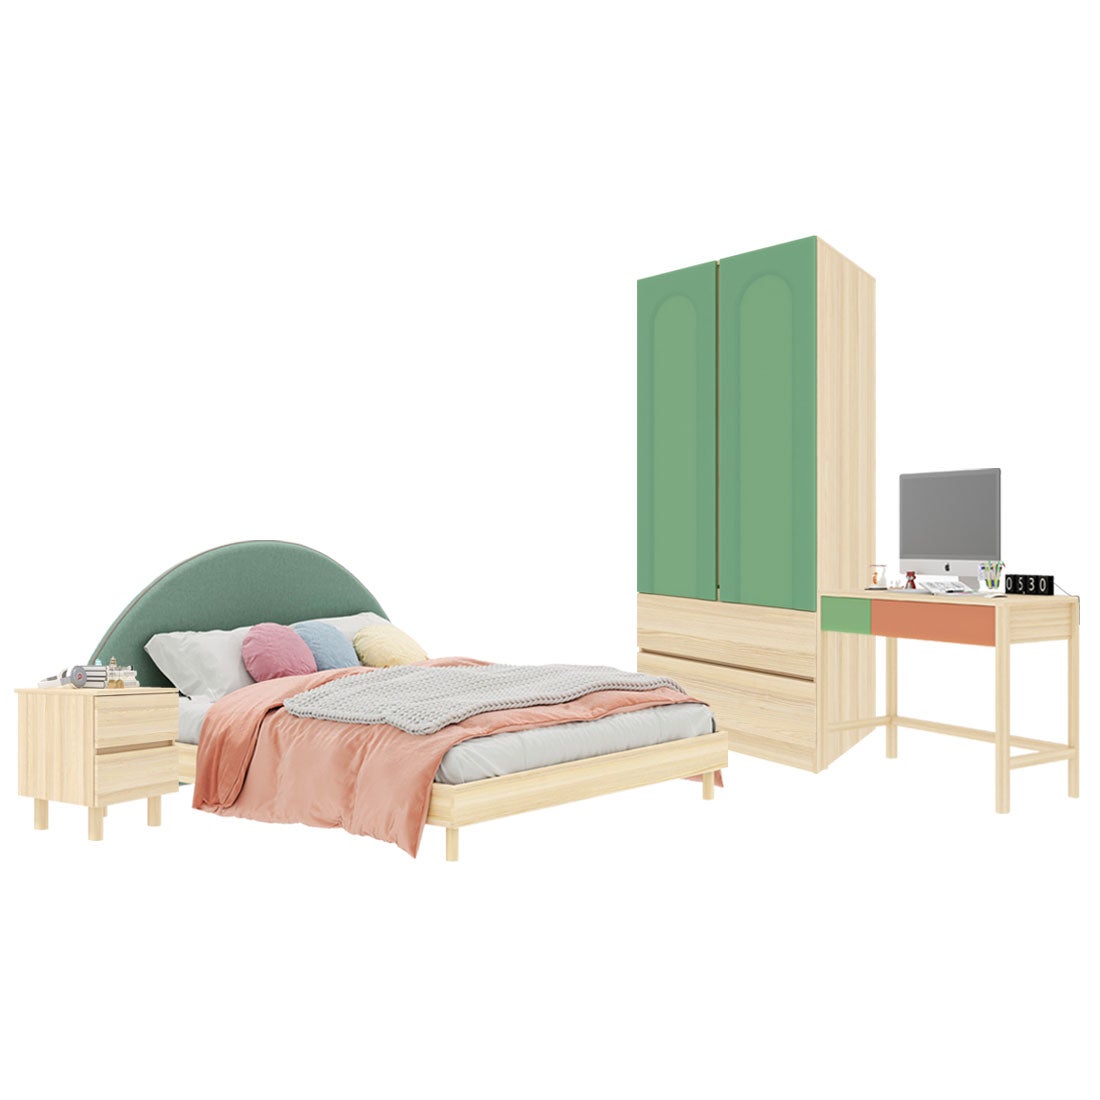 ชุดห้องนอน ขนาด 6 ฟุต-เบาะเขียว รุ่น Bingsoo & ตู้เสื้อผ้าลิ้นชัก 90 ซม. พร้อมตู้ข้างเตียง สีเขียว01